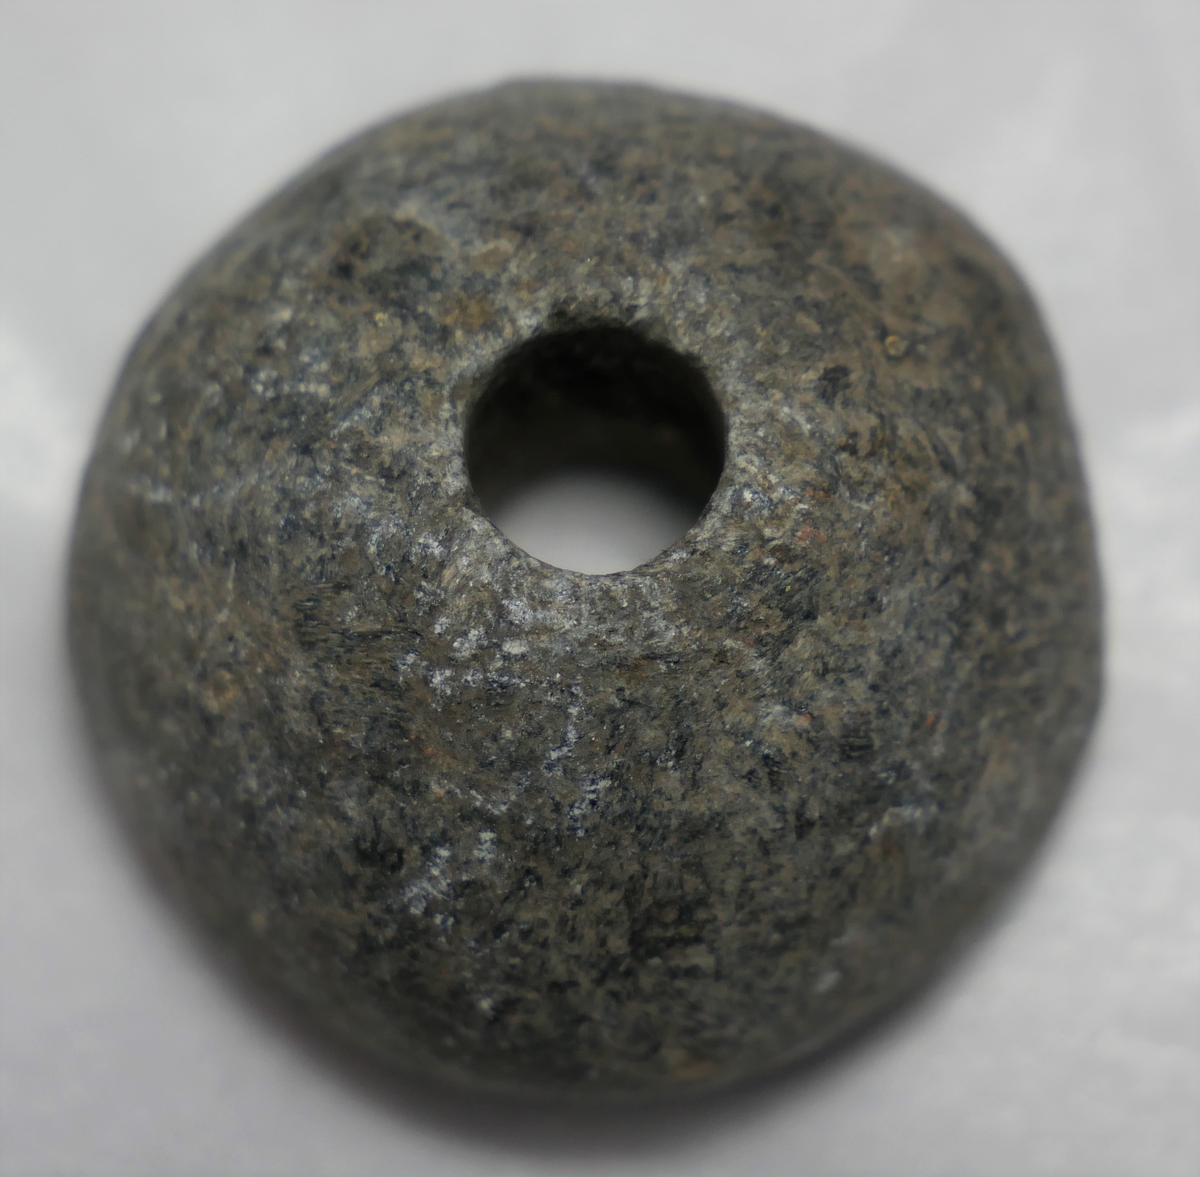 
1 haandsneldehjul.

Haandsneldehjul, halvkugleformet, av en klæberartet stensort. Diameter 3,1 cm, høide 2,1 cm. Fundet ved nylandsgraving i Tømmerlidsbakken, Amble.
Gave fra husmand Torbjørn Eneteig, Amble.